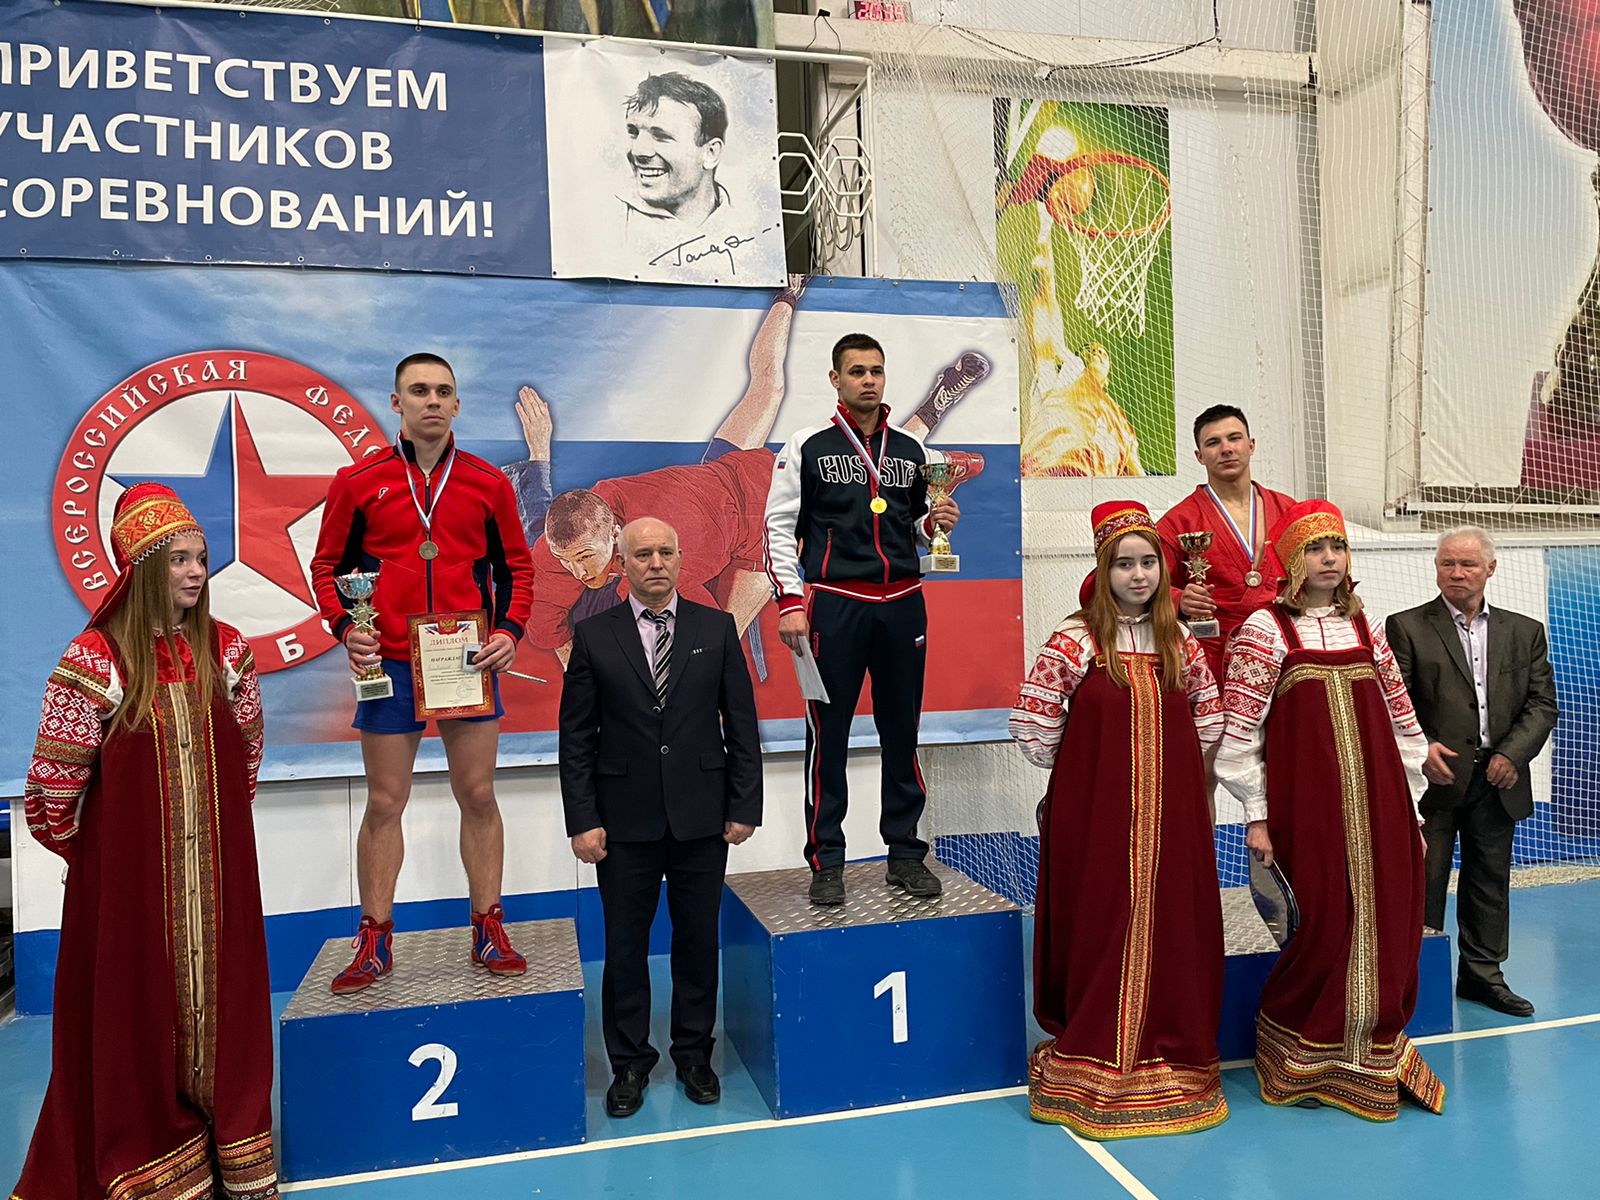 Прокопьевск соревнования по самбо